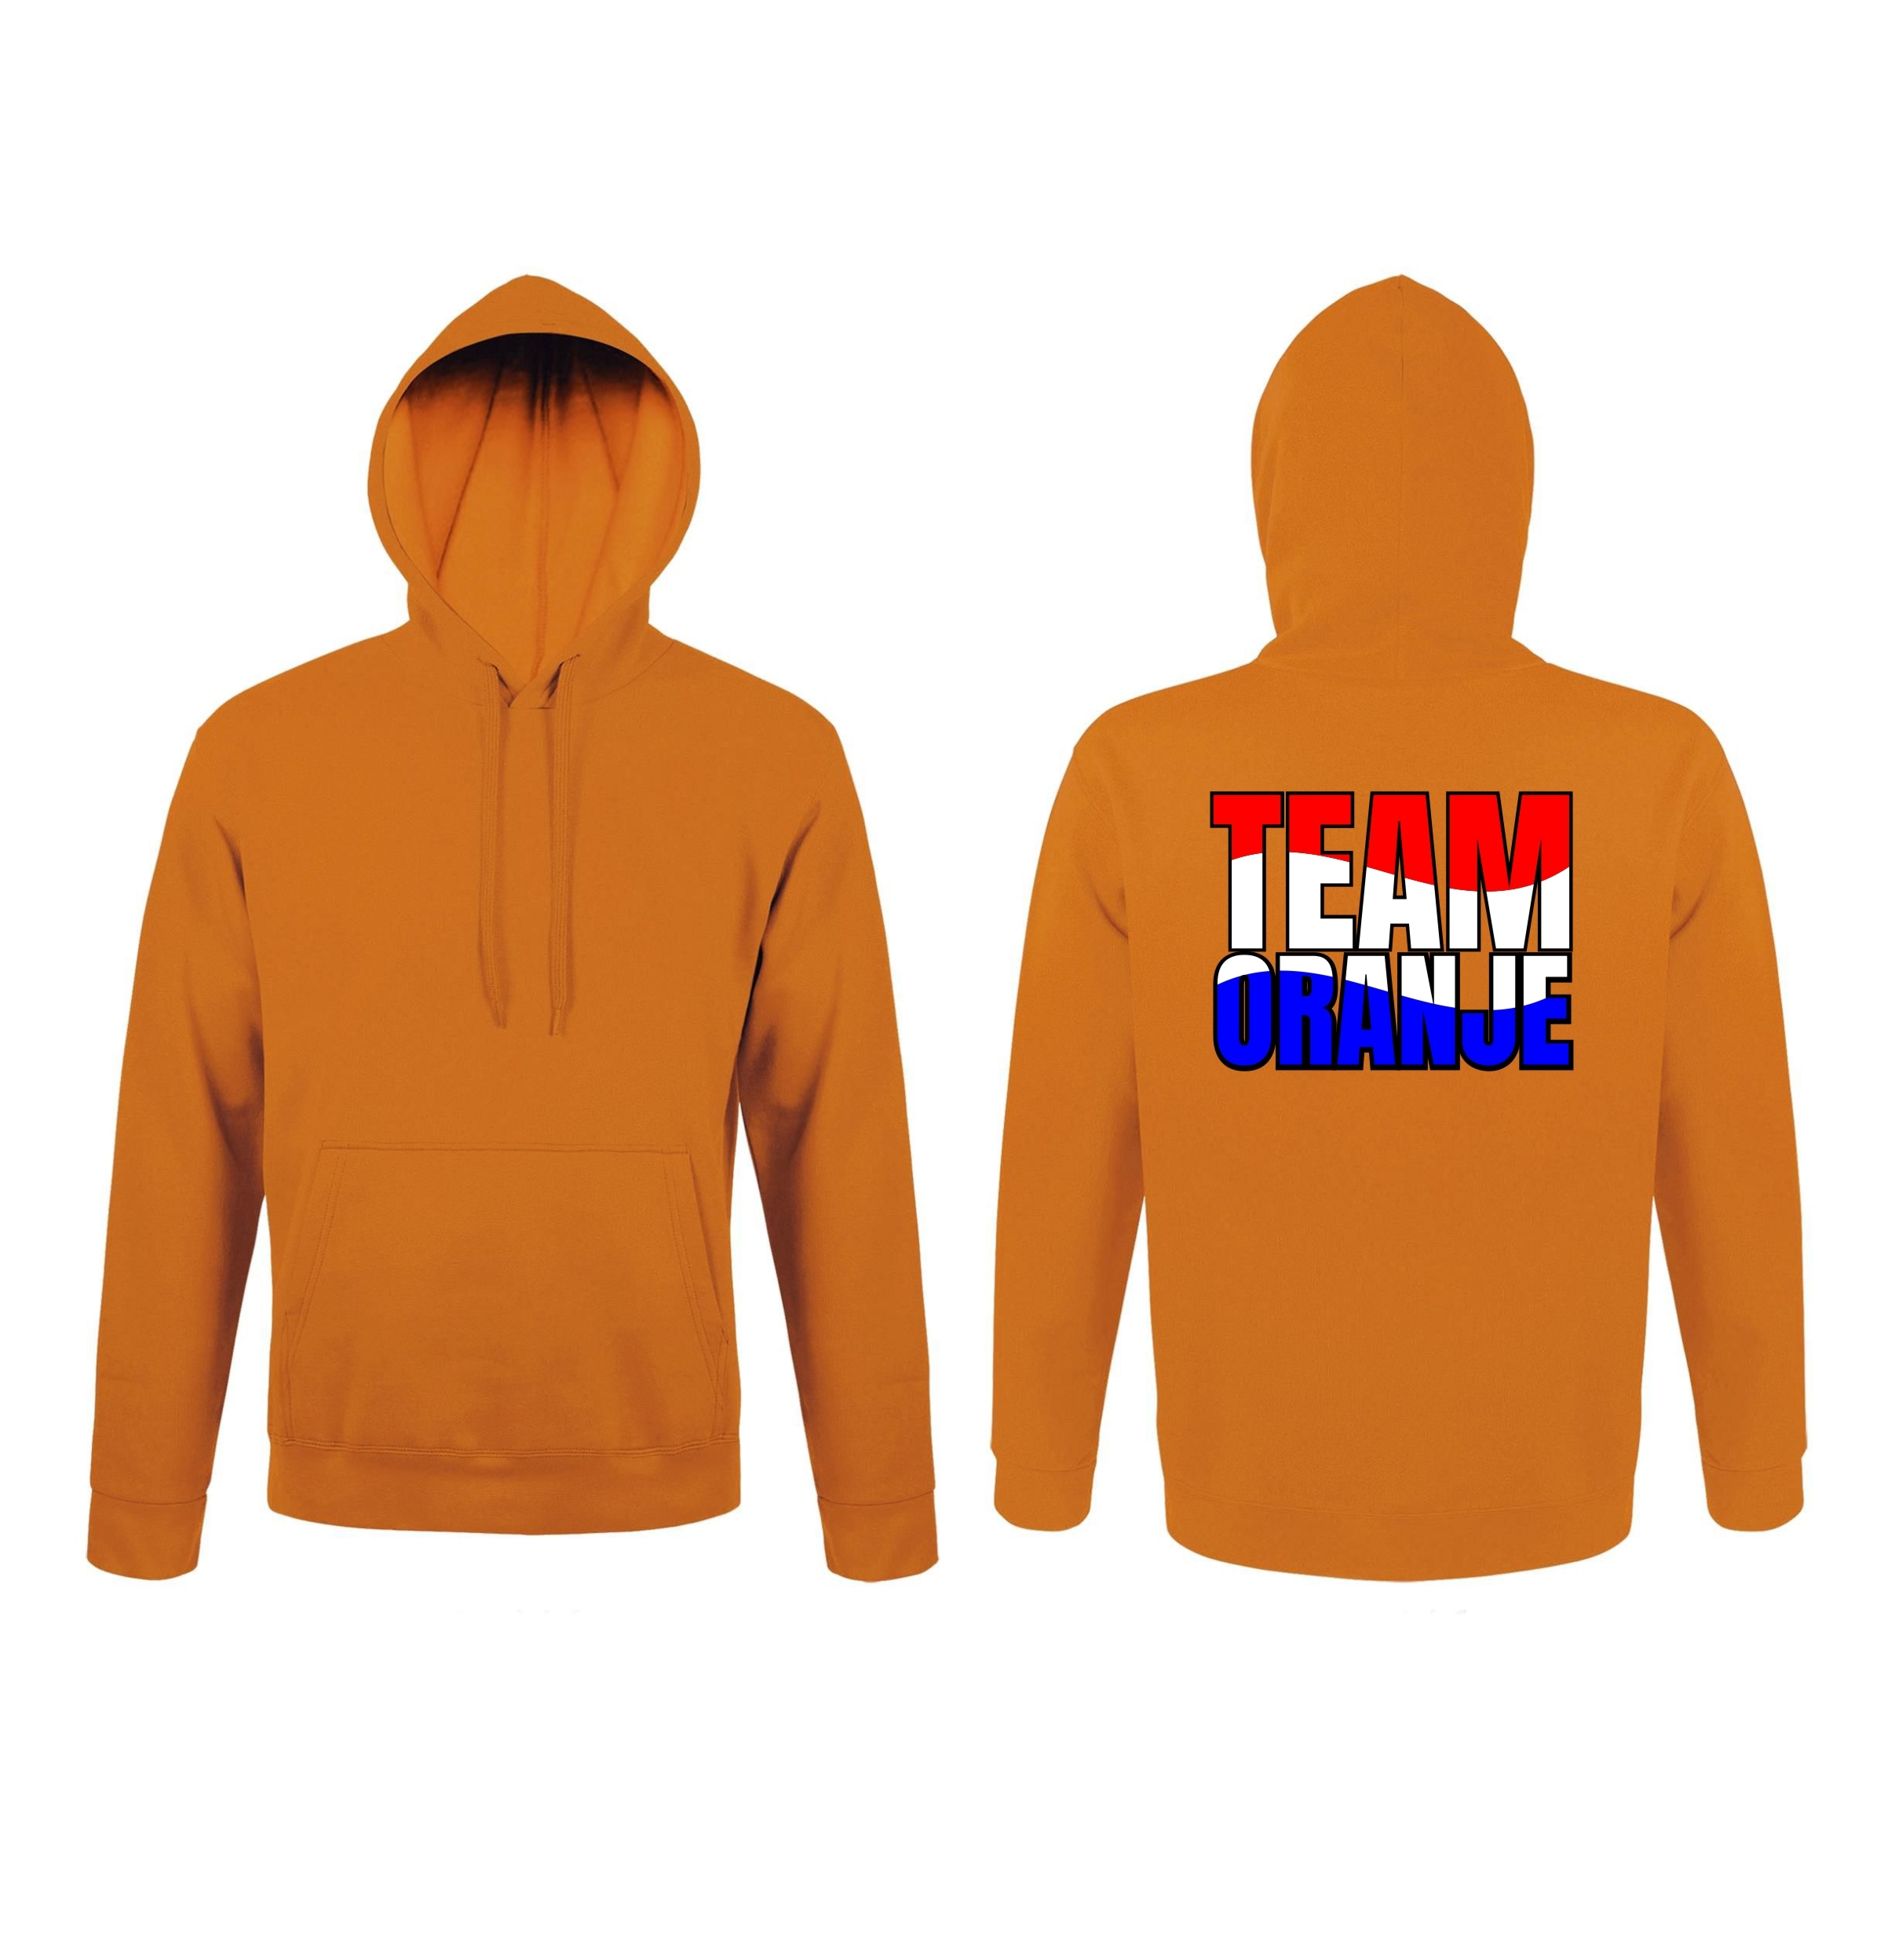 Oranje hoodie team oranje in de kleuren rood wit blauw